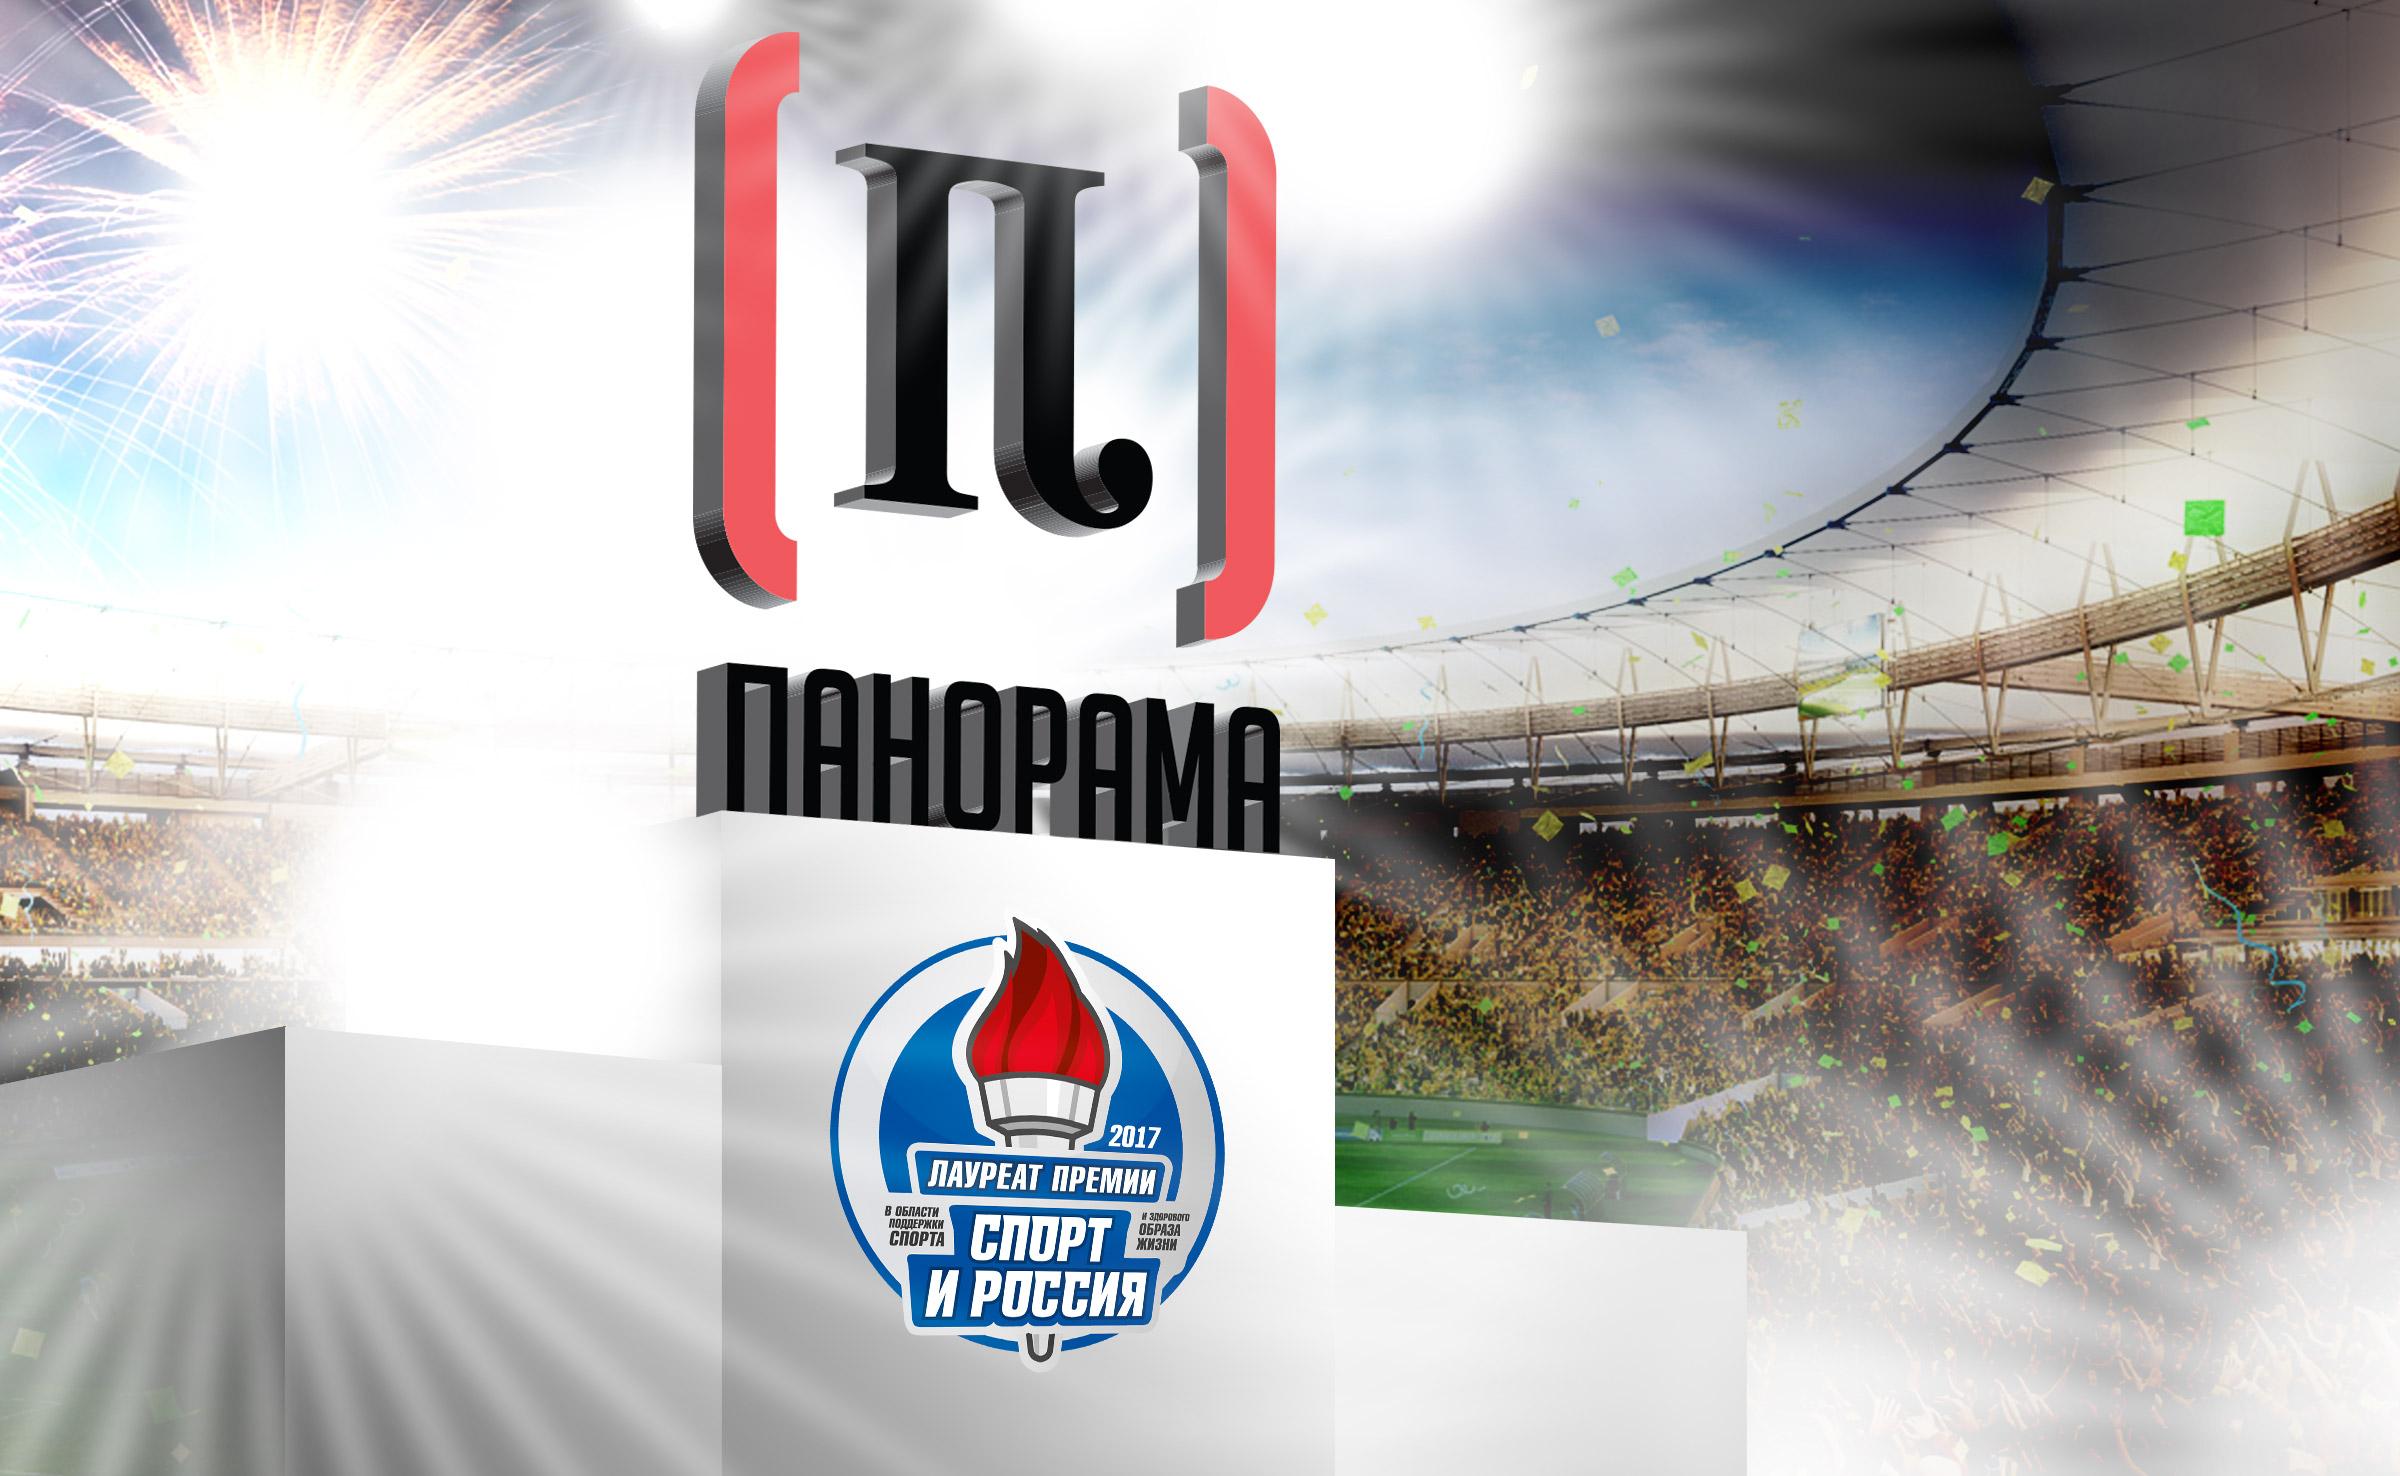 Компания «Панорама» стала лауреатом национальной премии «Спорт и Россия»